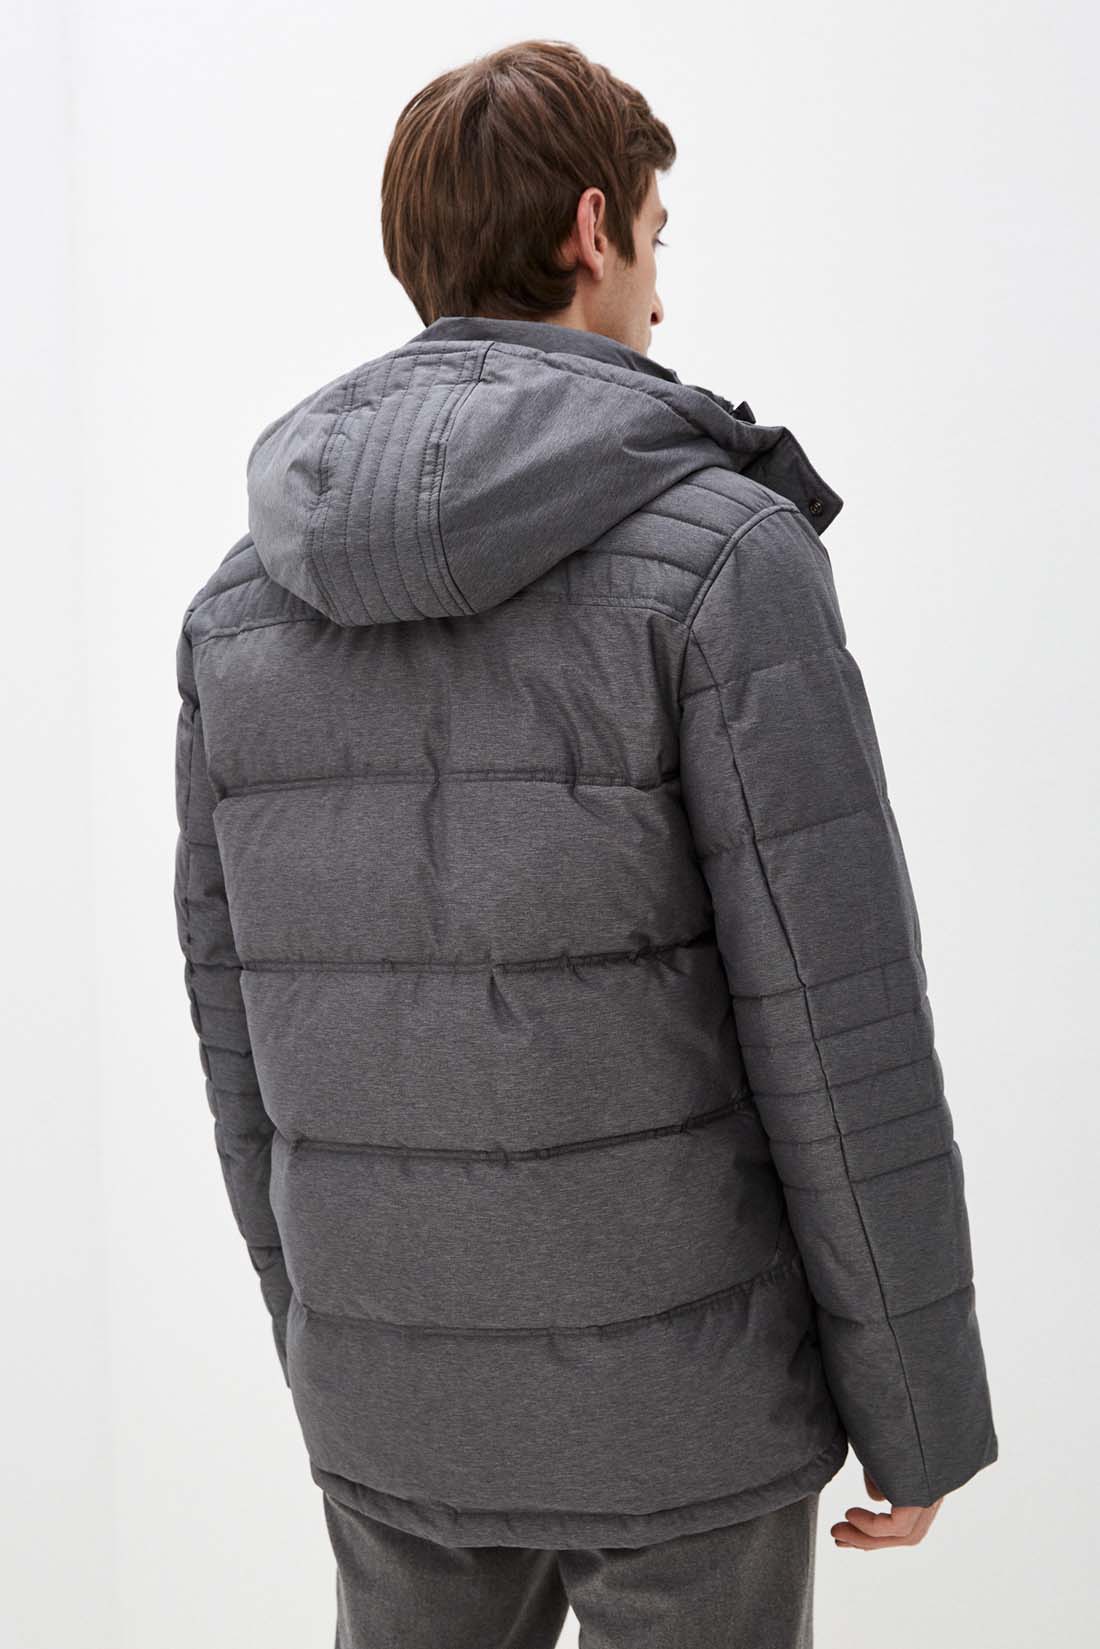 Куртка (Эко пух) (арт. baon B541507), размер S, цвет marengo melange#ebeeed Куртка (Эко пух) (арт. baon B541507) - фото 2